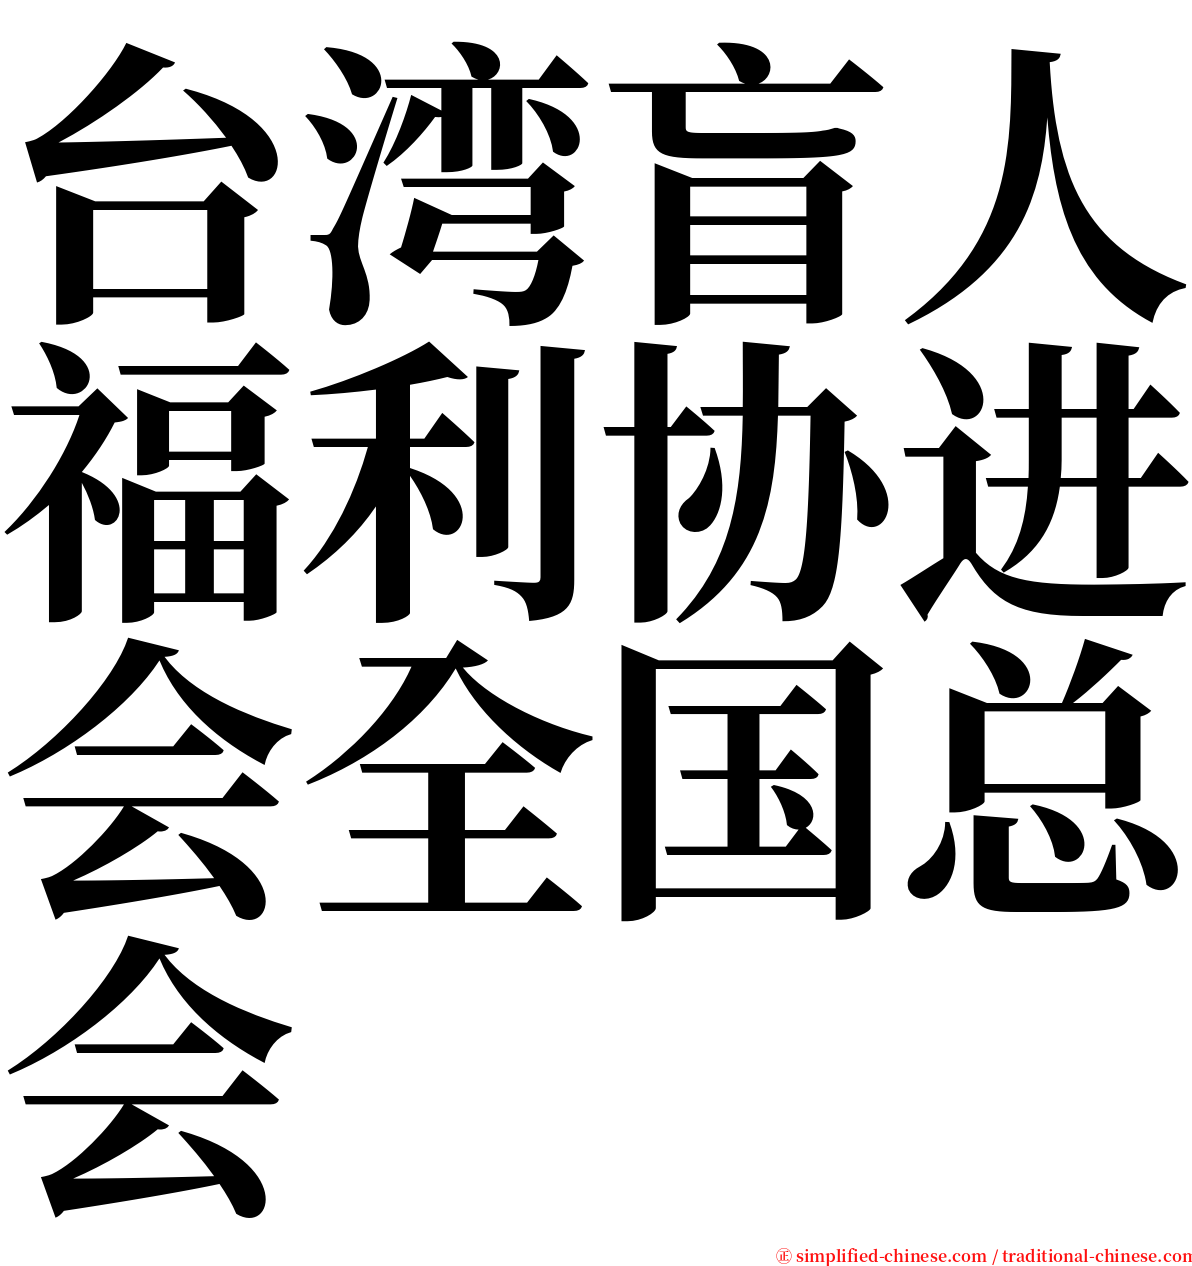 台湾盲人福利协进会全国总会 serif font